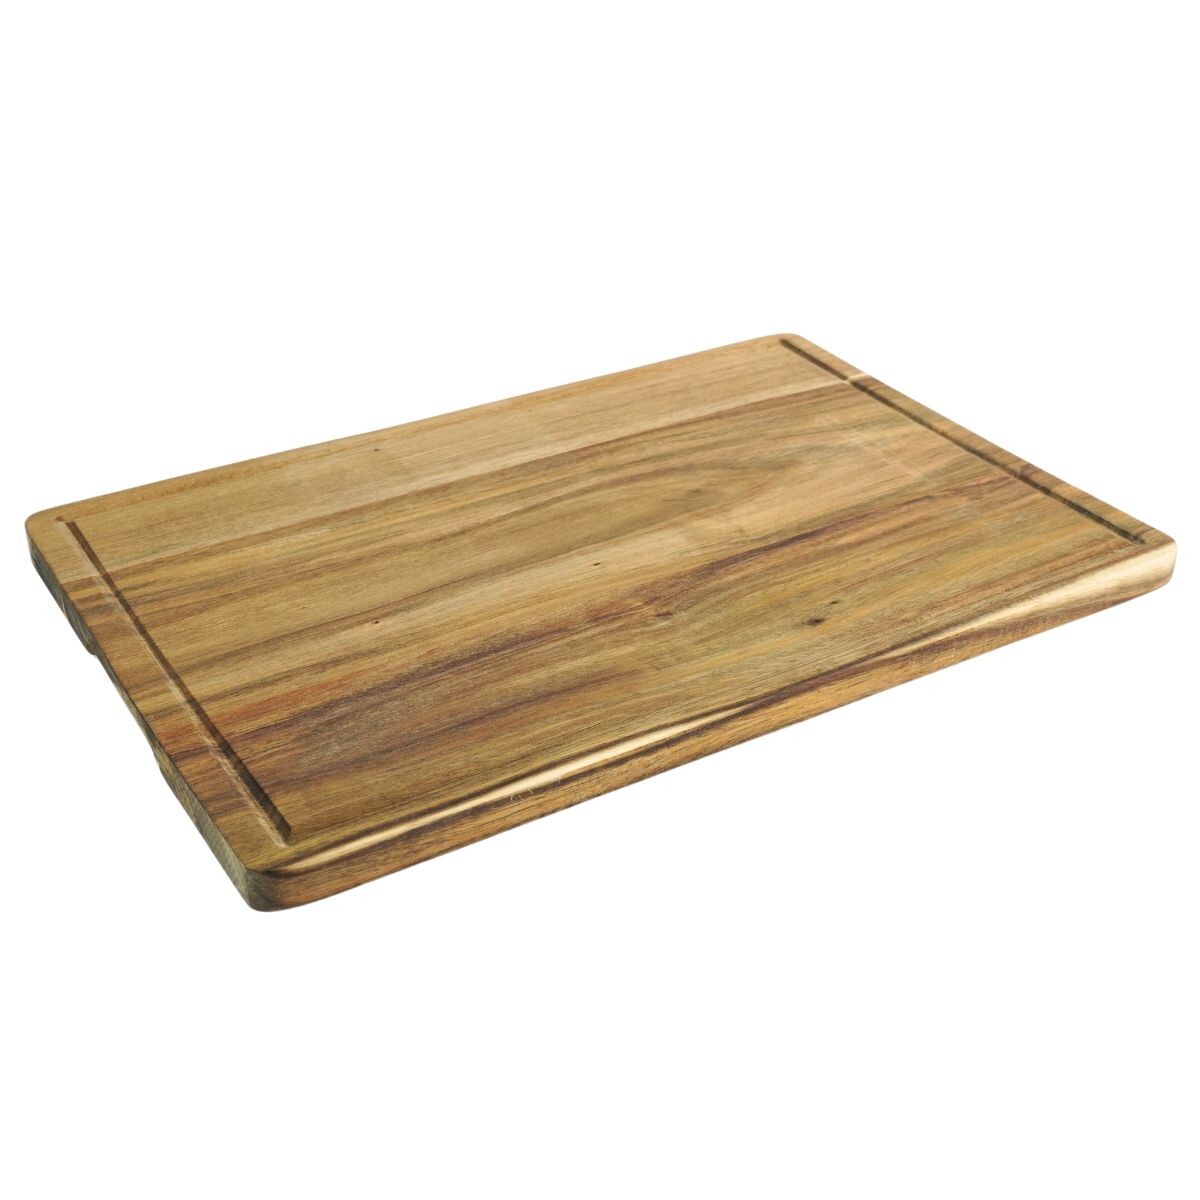 Tabla para picar de madera rectangular 